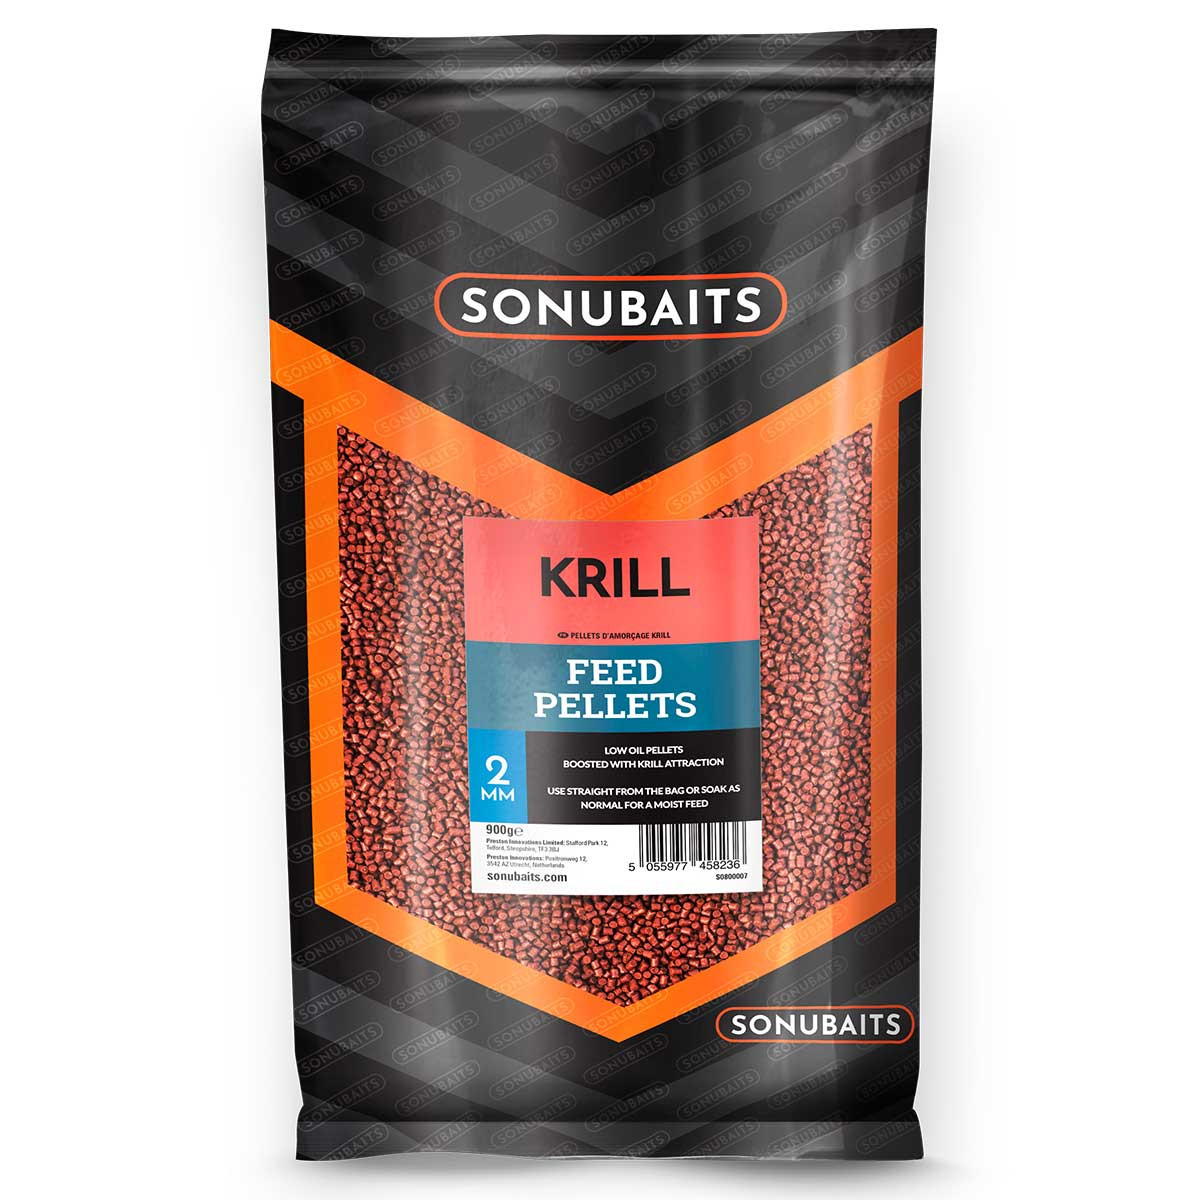 Sonubaits Feed Pellets Krill 2mm (900g)